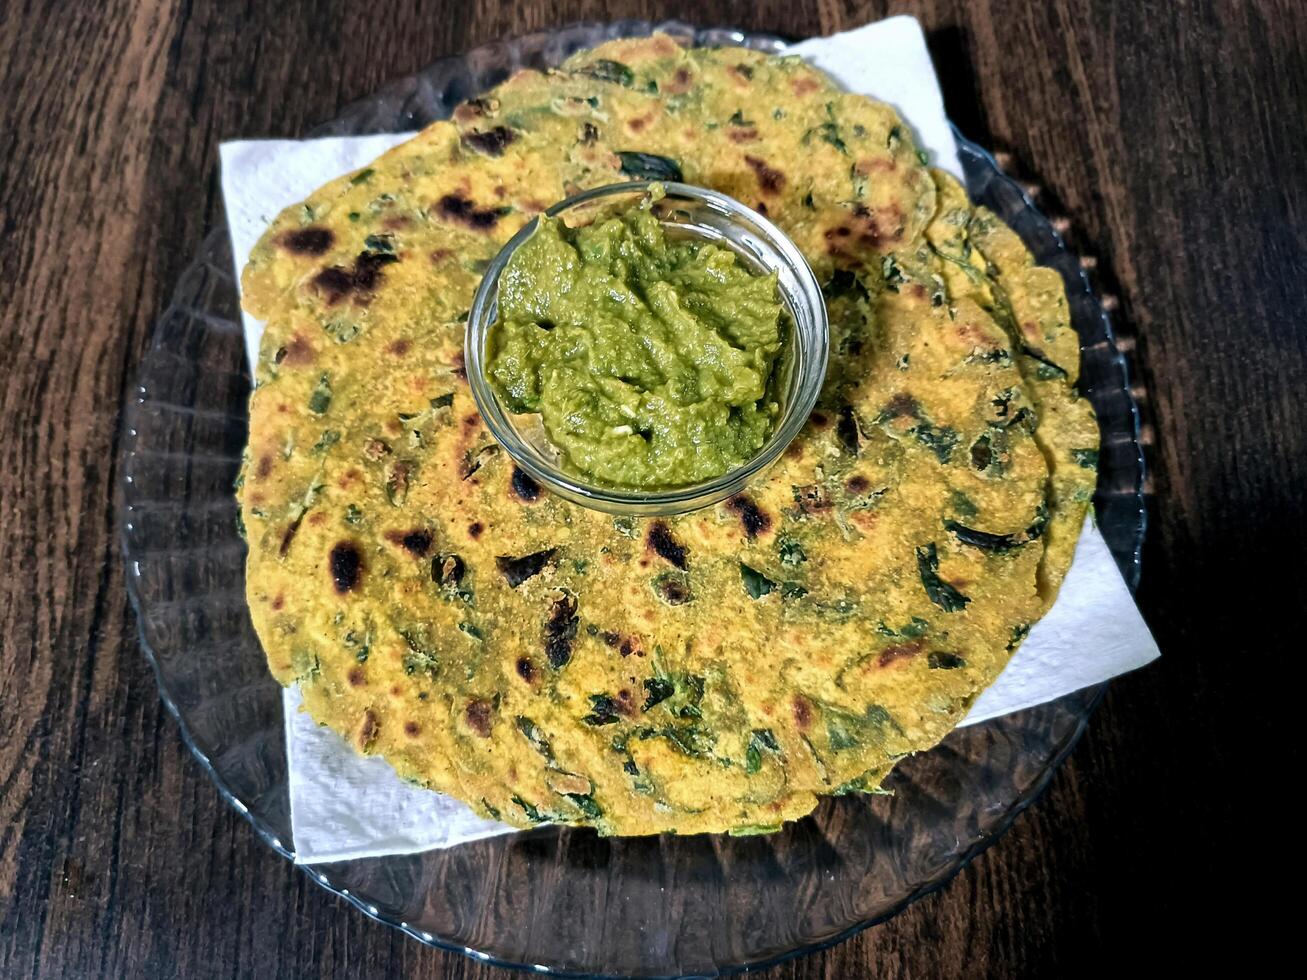 palak paratha o indio plano panes hecho desde Espinacas y servido con mango pepinillo y menta aderezo, indio desayuno foto